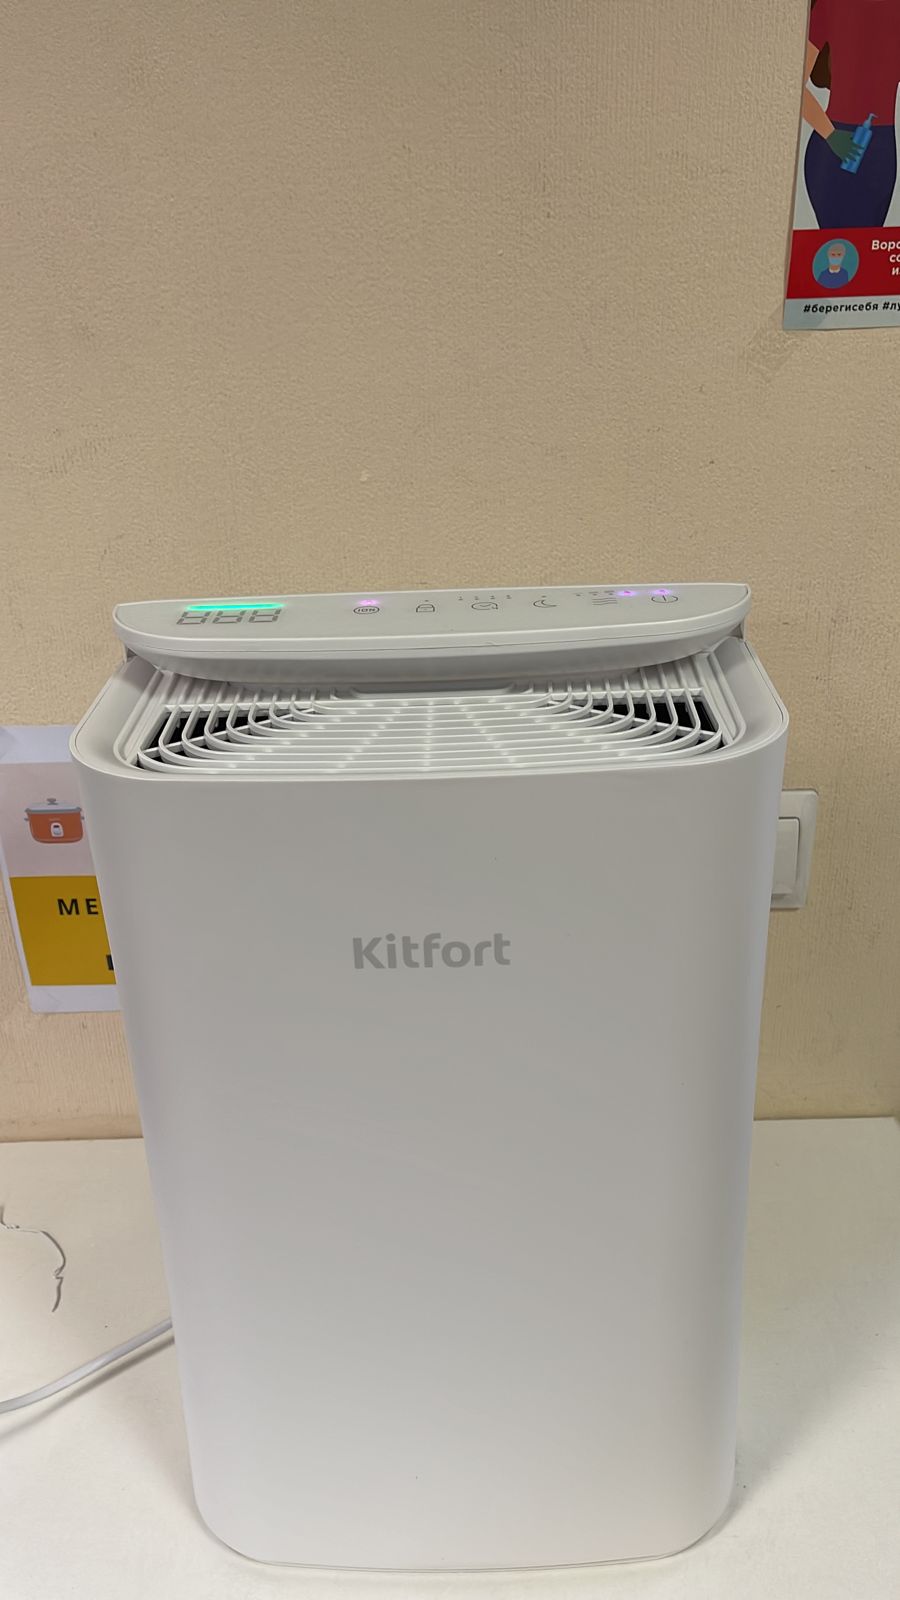   KitFort KT-2825